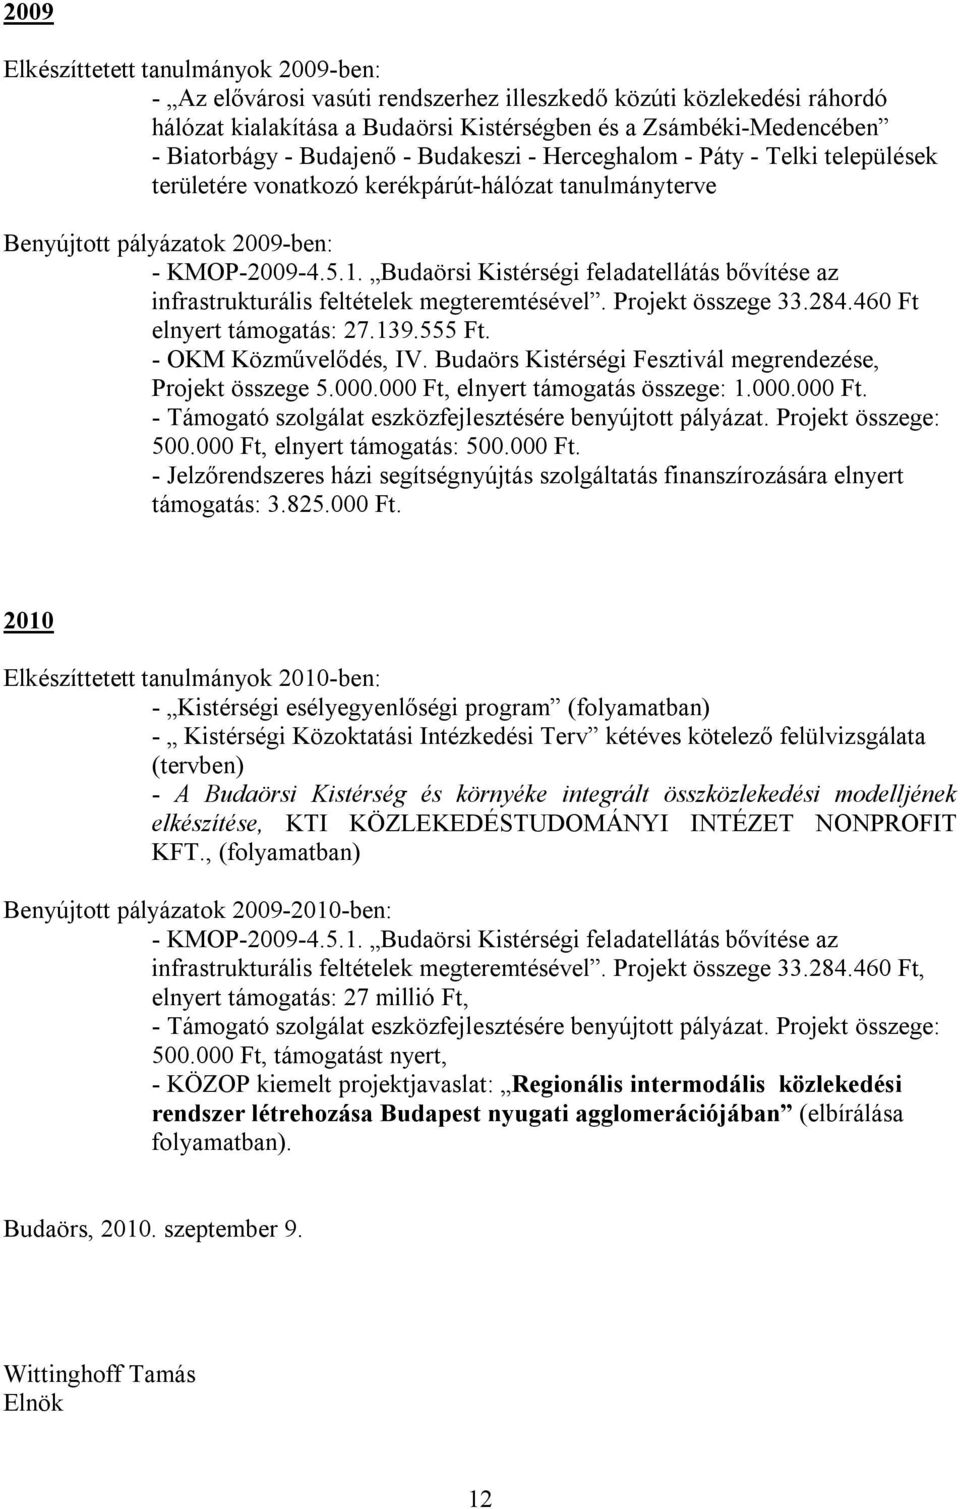 Budaörsi Kistérségi feladatellátás bővítése az infrastrukturális feltételek megteremtésével. Projekt összege 33.284.460 Ft elnyert támogatás: 27.139.555 Ft. - OKM Közművelődés, IV.